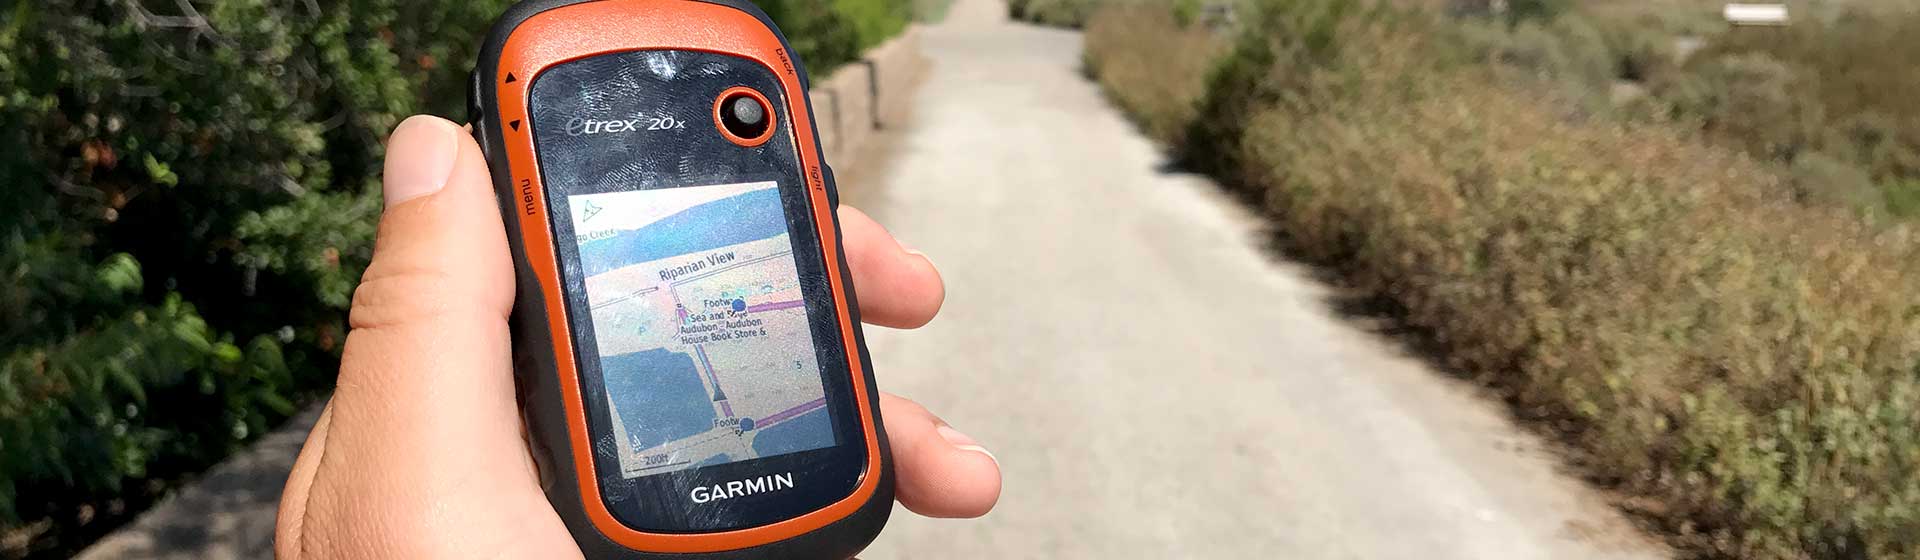 Garmin eTrex 20x Hiking GPS Review – HikingGuy.com